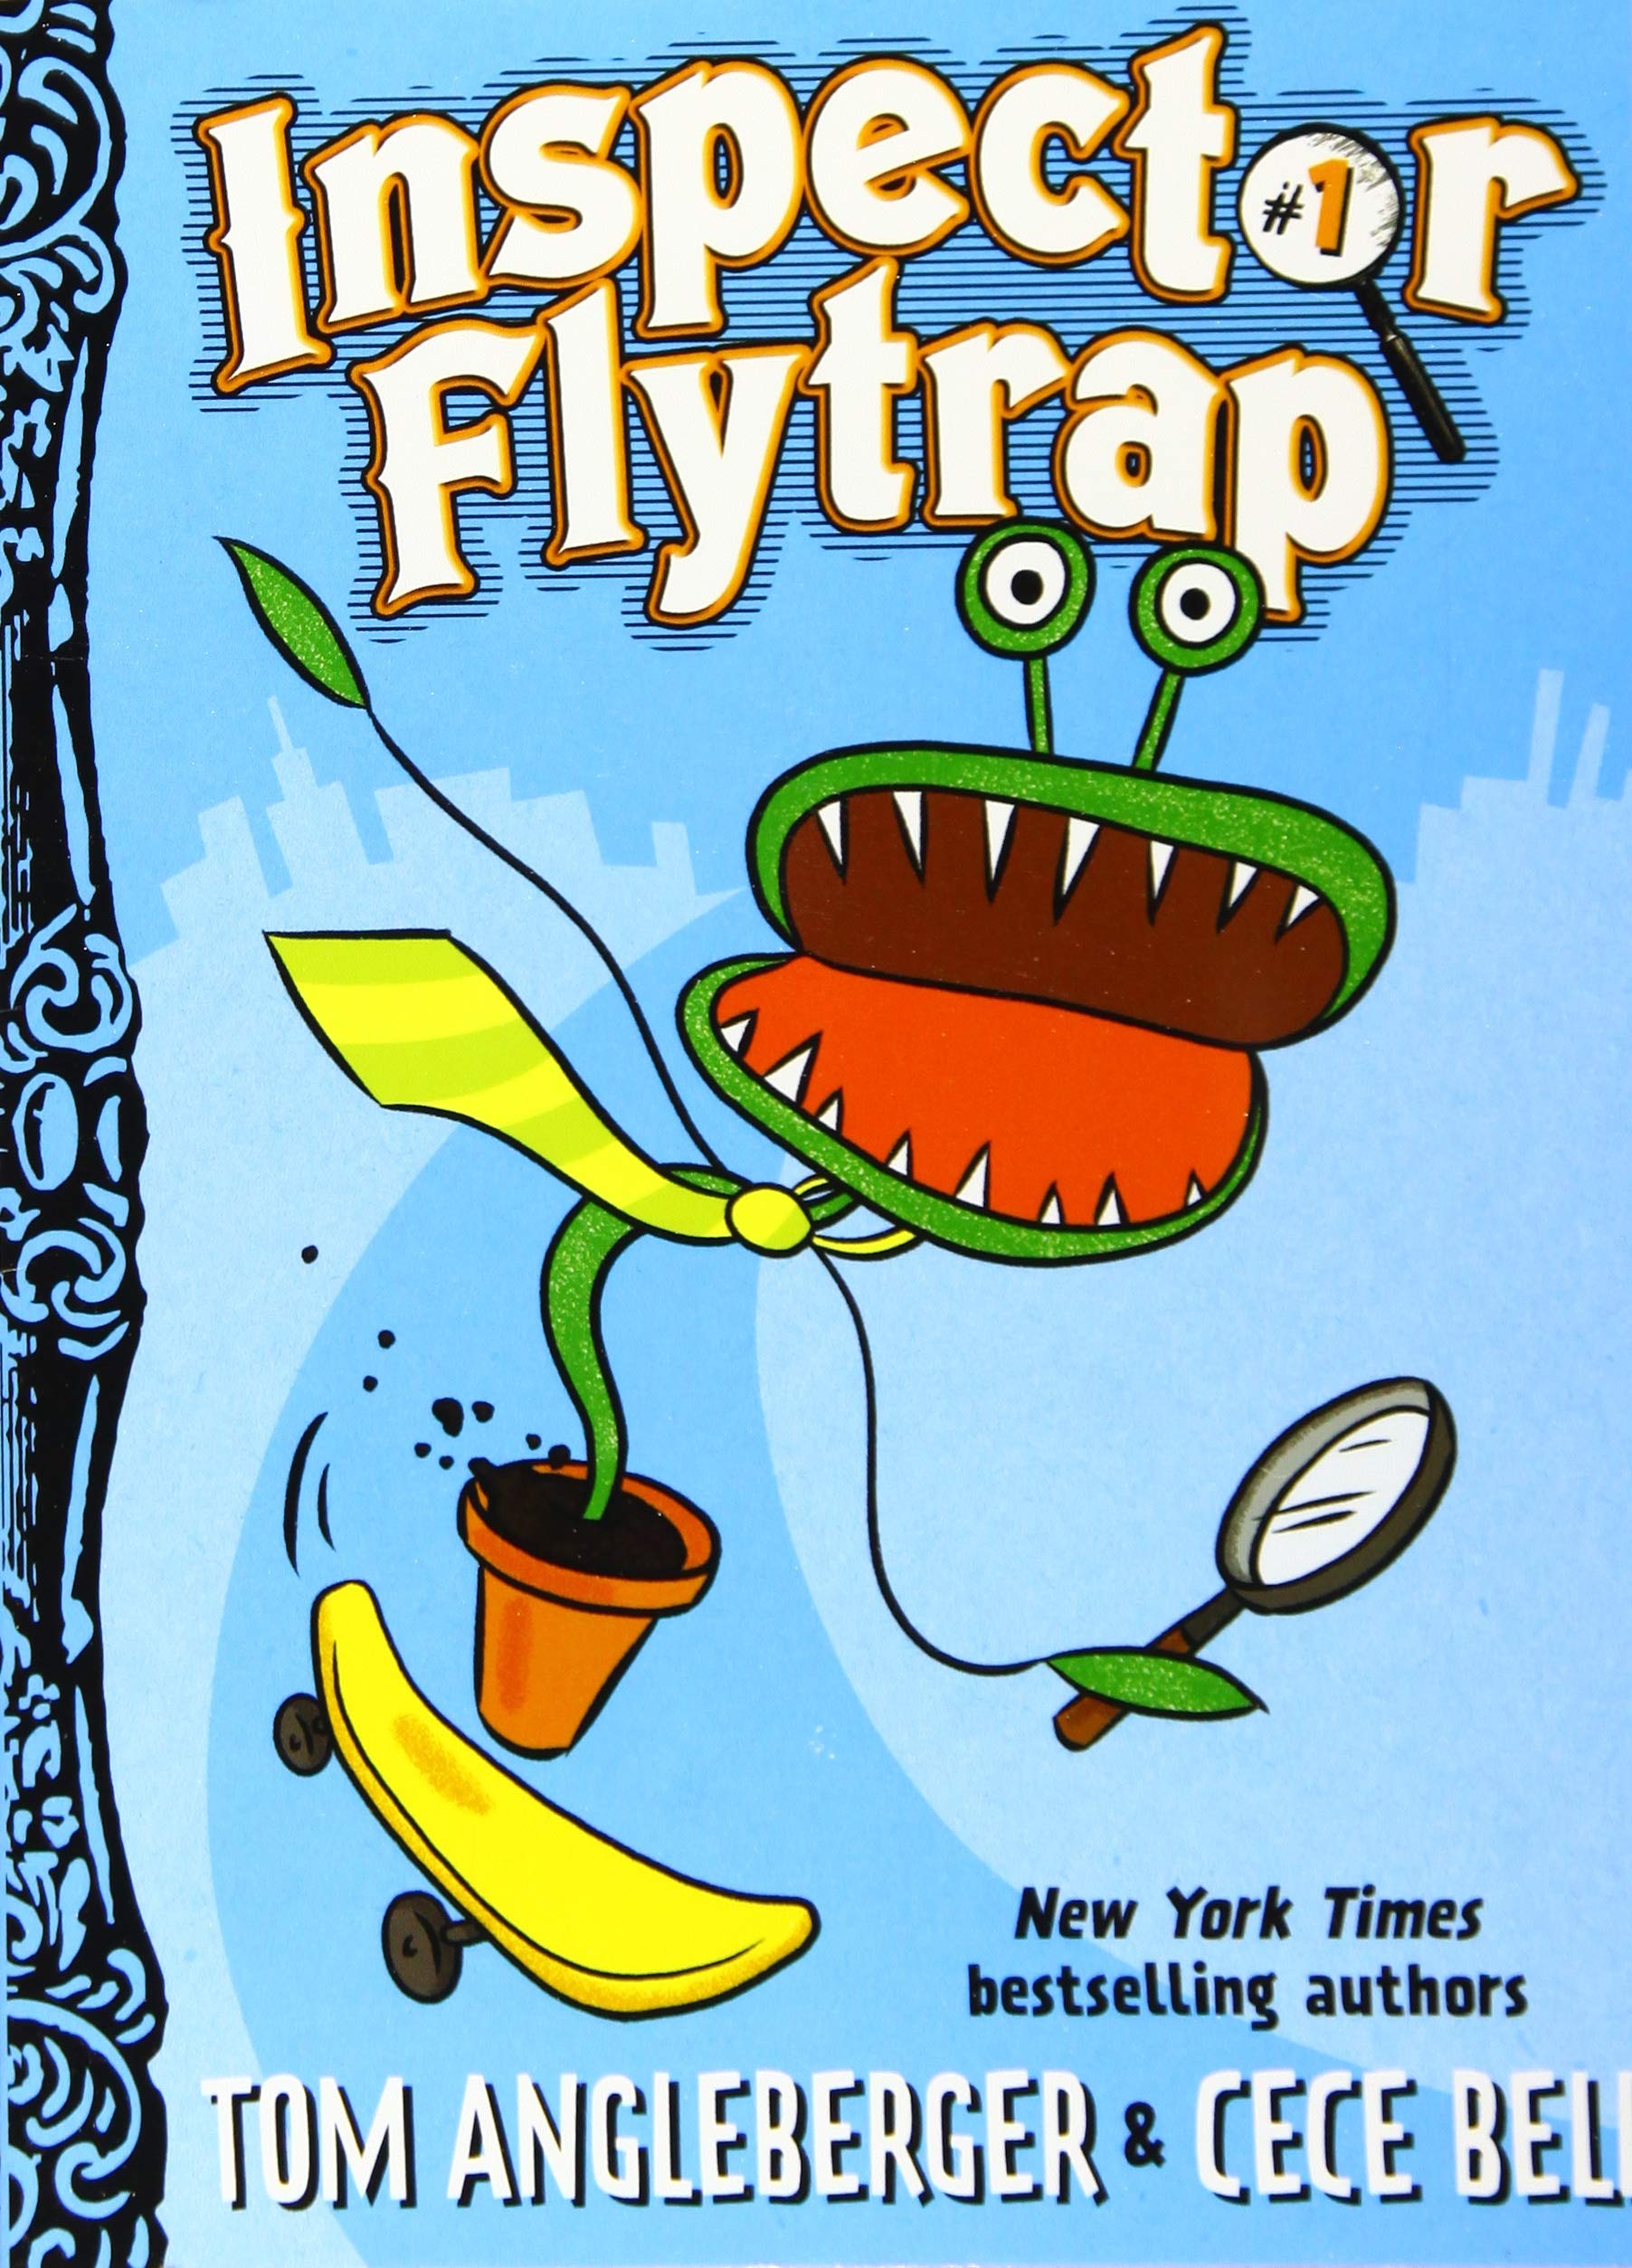 Inspector Flytrap book cover